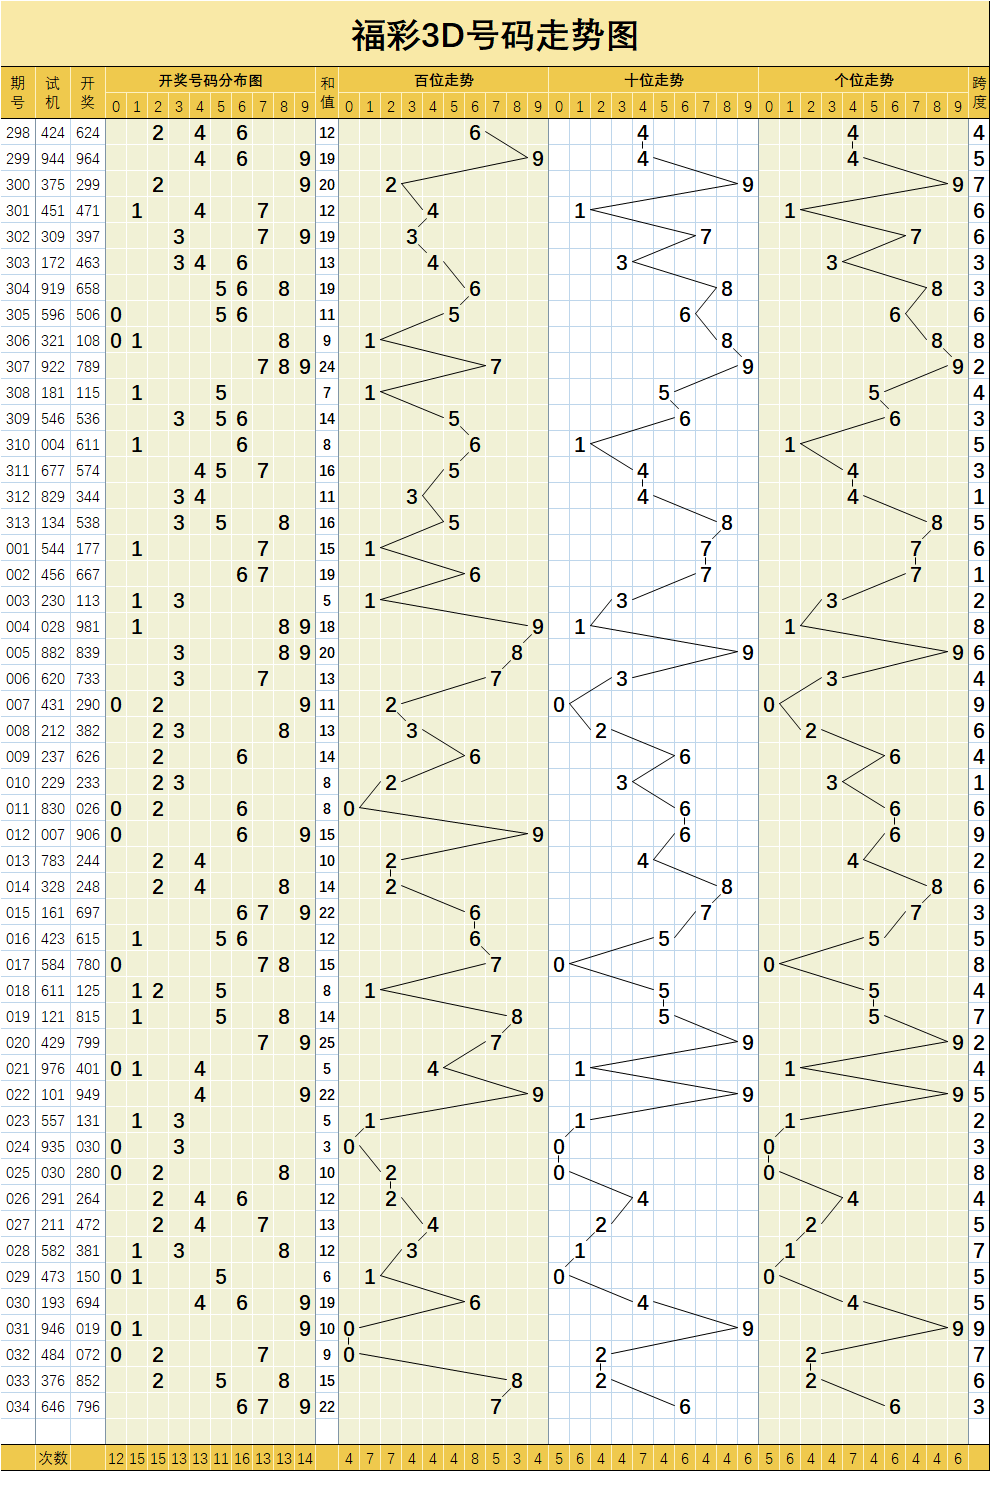 福彩3d034期基础与大中小码分布走势图